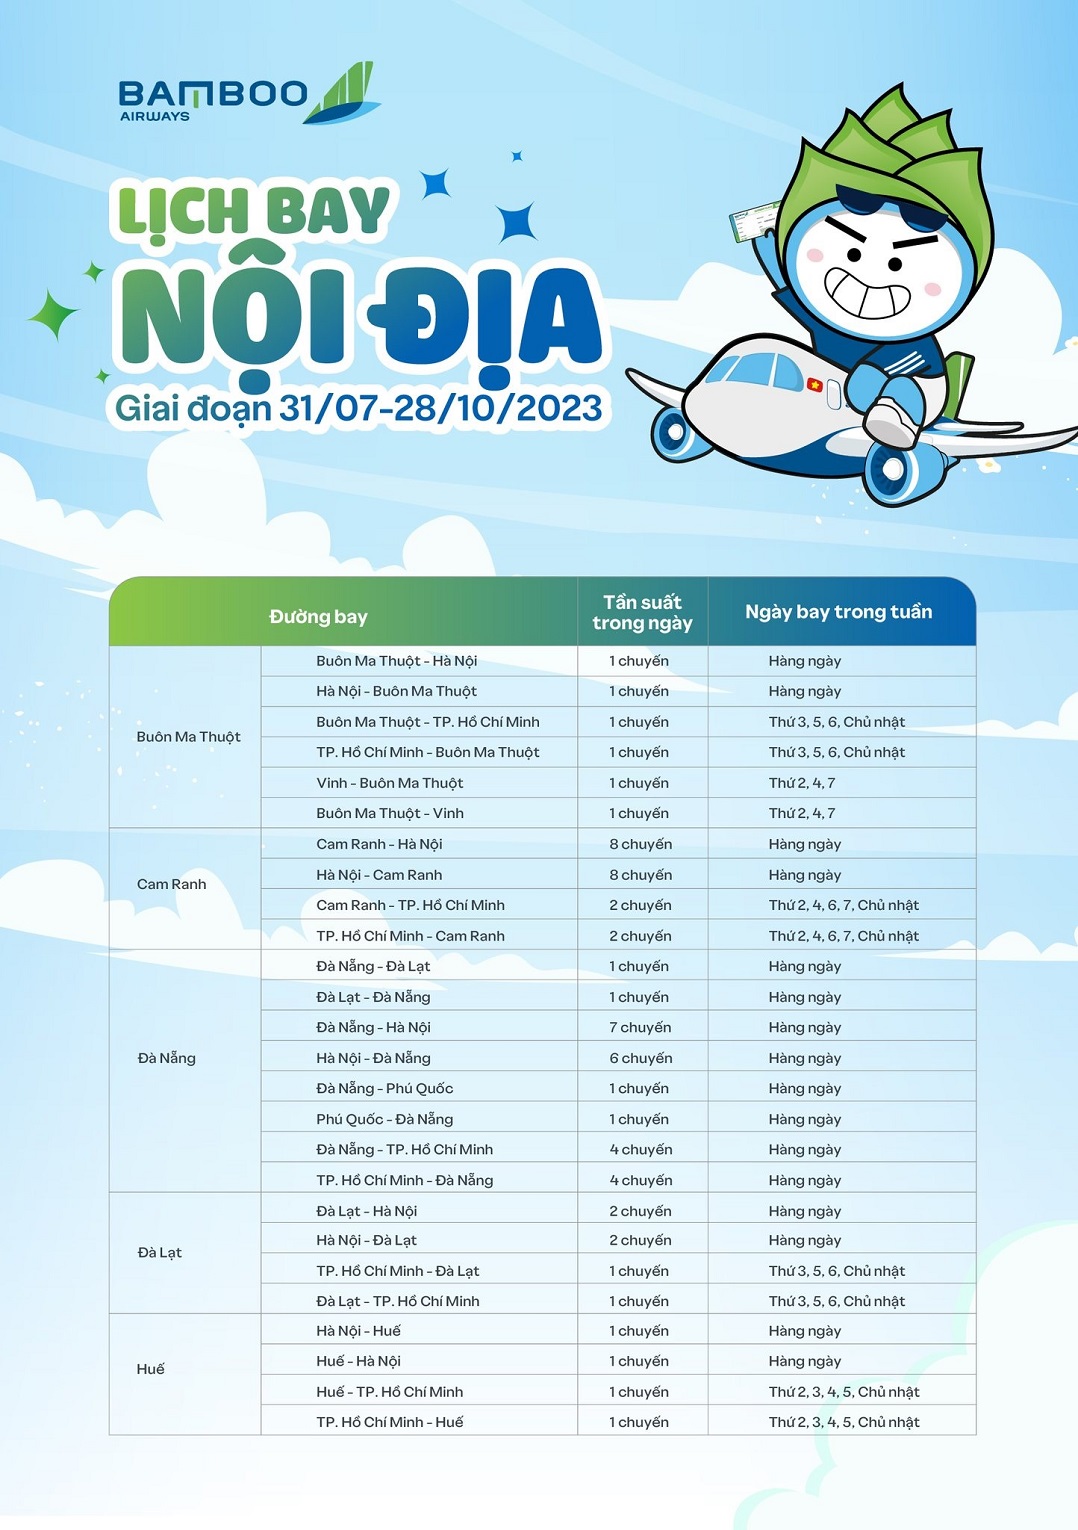 Bamboo Airways cập nhật lịch bay Nội địa